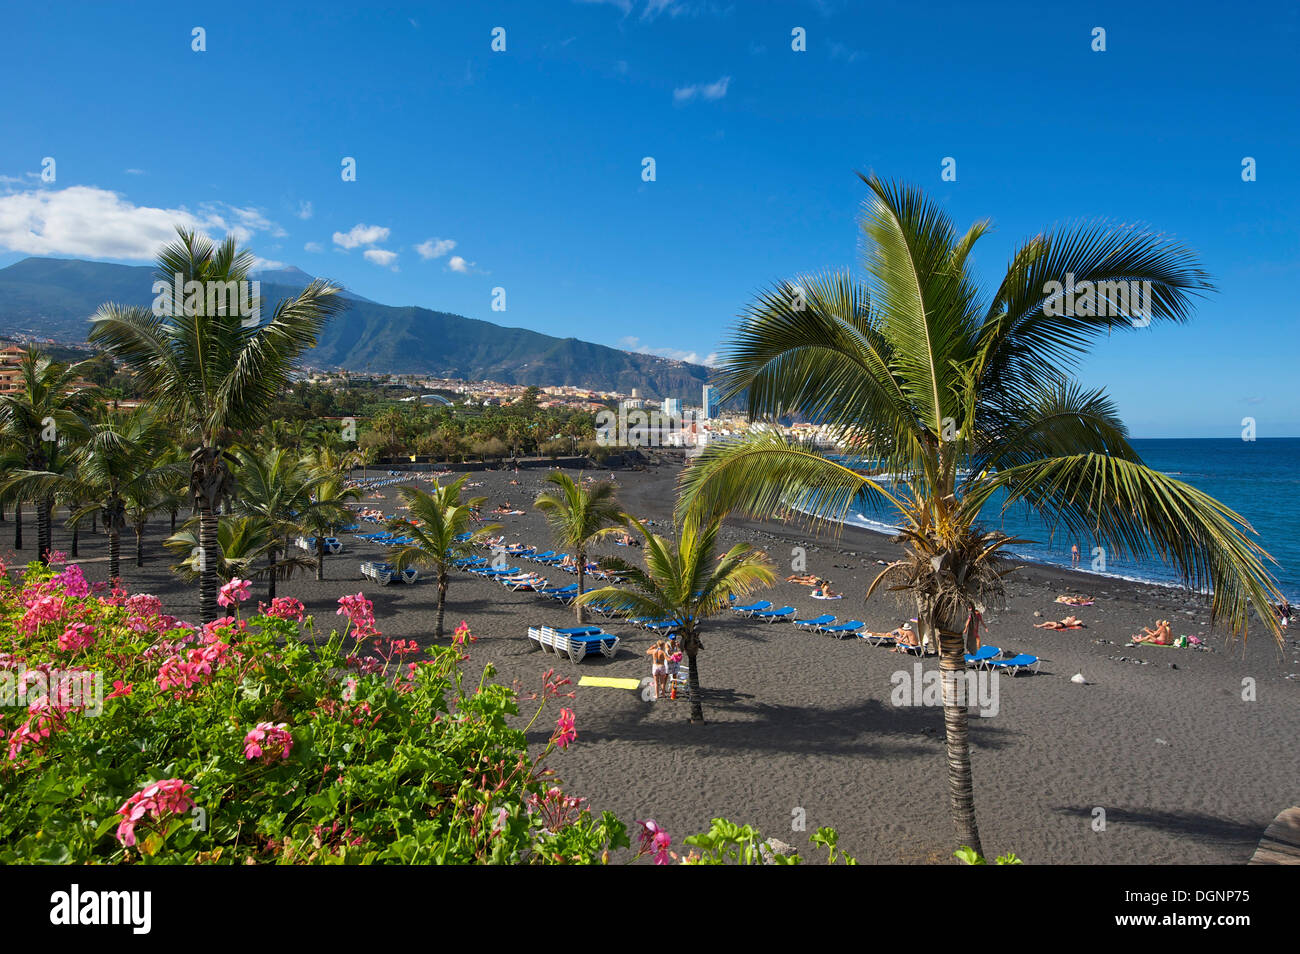 Plage, Playa Jardin, avec le volcan du Teide à Puerto de la Cruz, Tenerife, Canaries, Espagne, Europe Banque D'Images